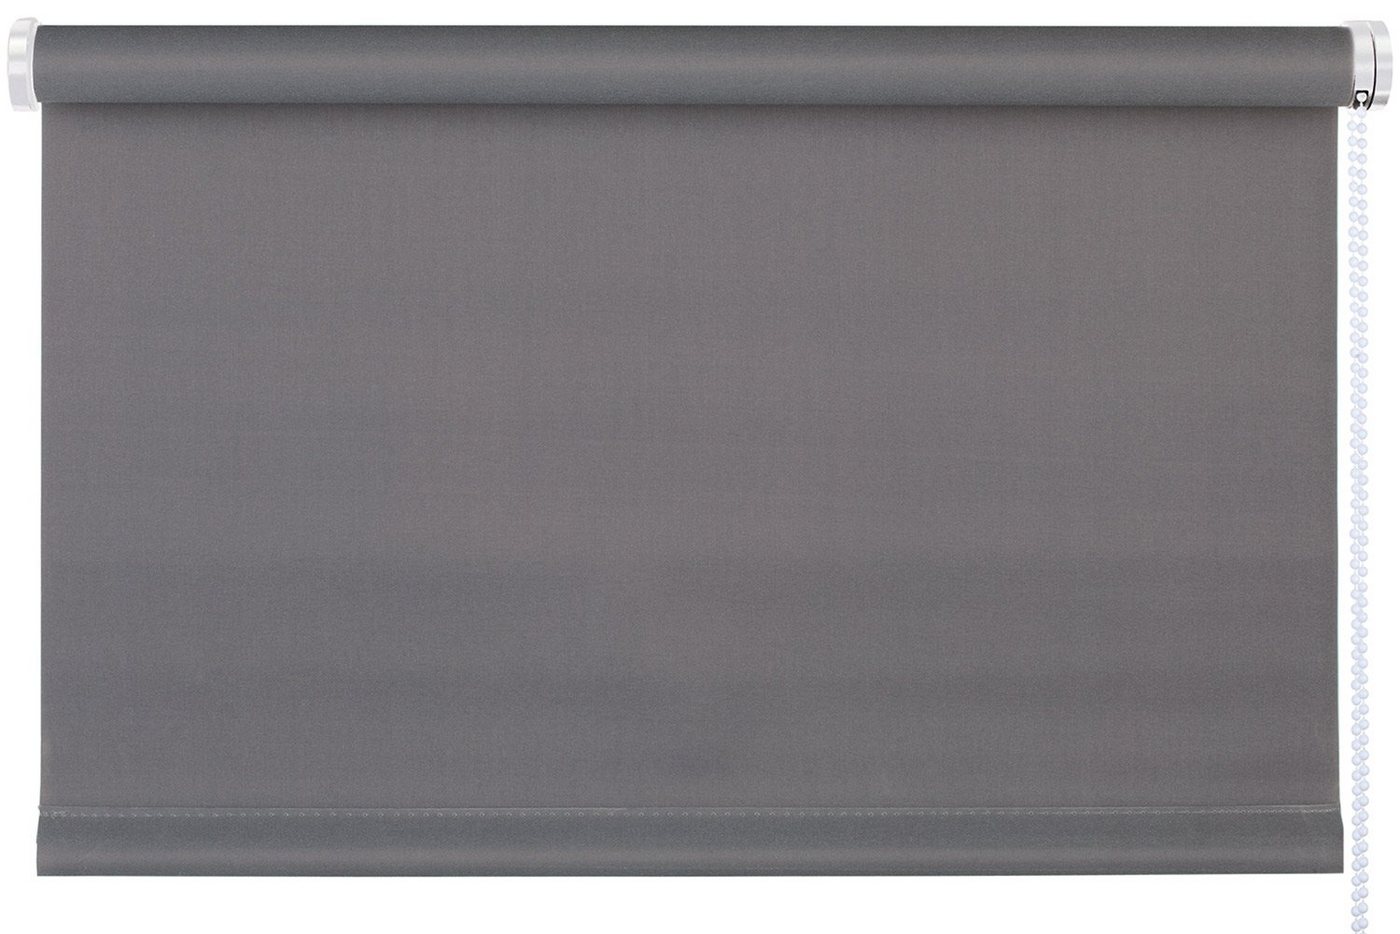 Rollo TREND, Design Rollo, Grau, B 60 x H 150 cm, mydeco, blickdicht, ohne Bohren, Klemmfix von mydeco